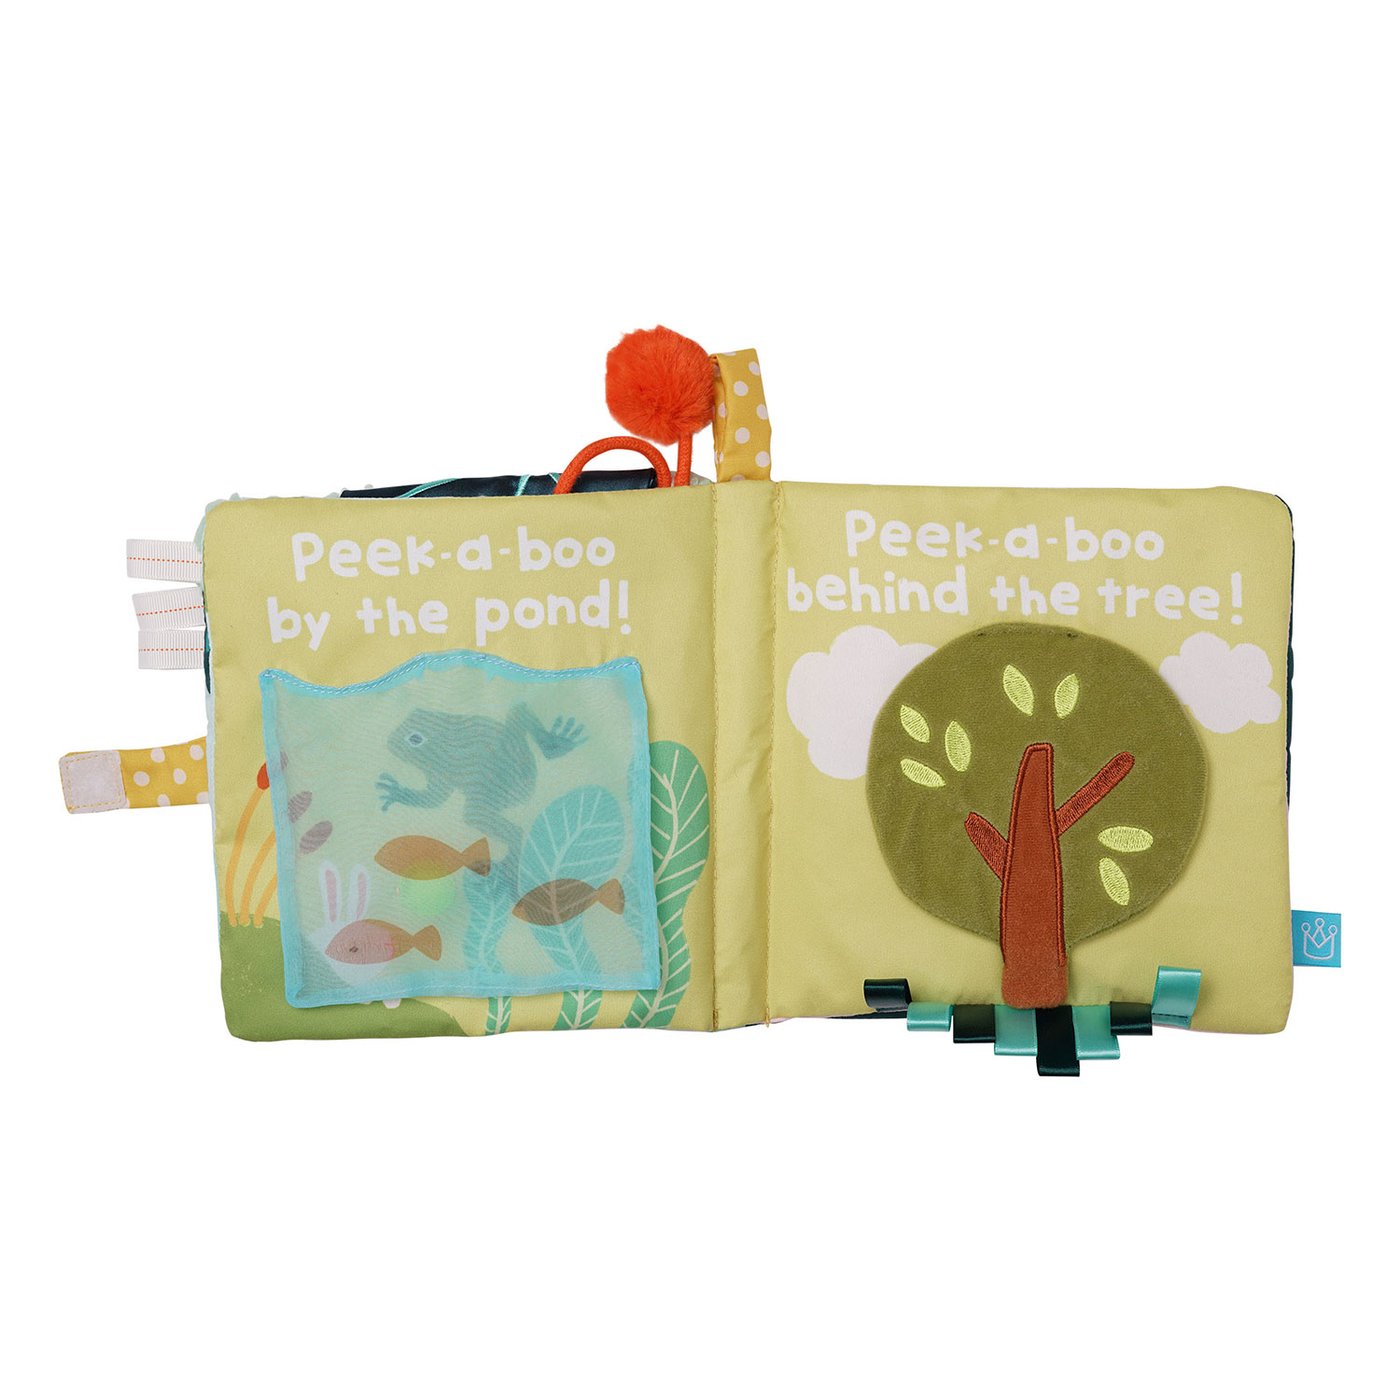 Fairytale Peek-A-Boo Bunny Soft Activity Book    